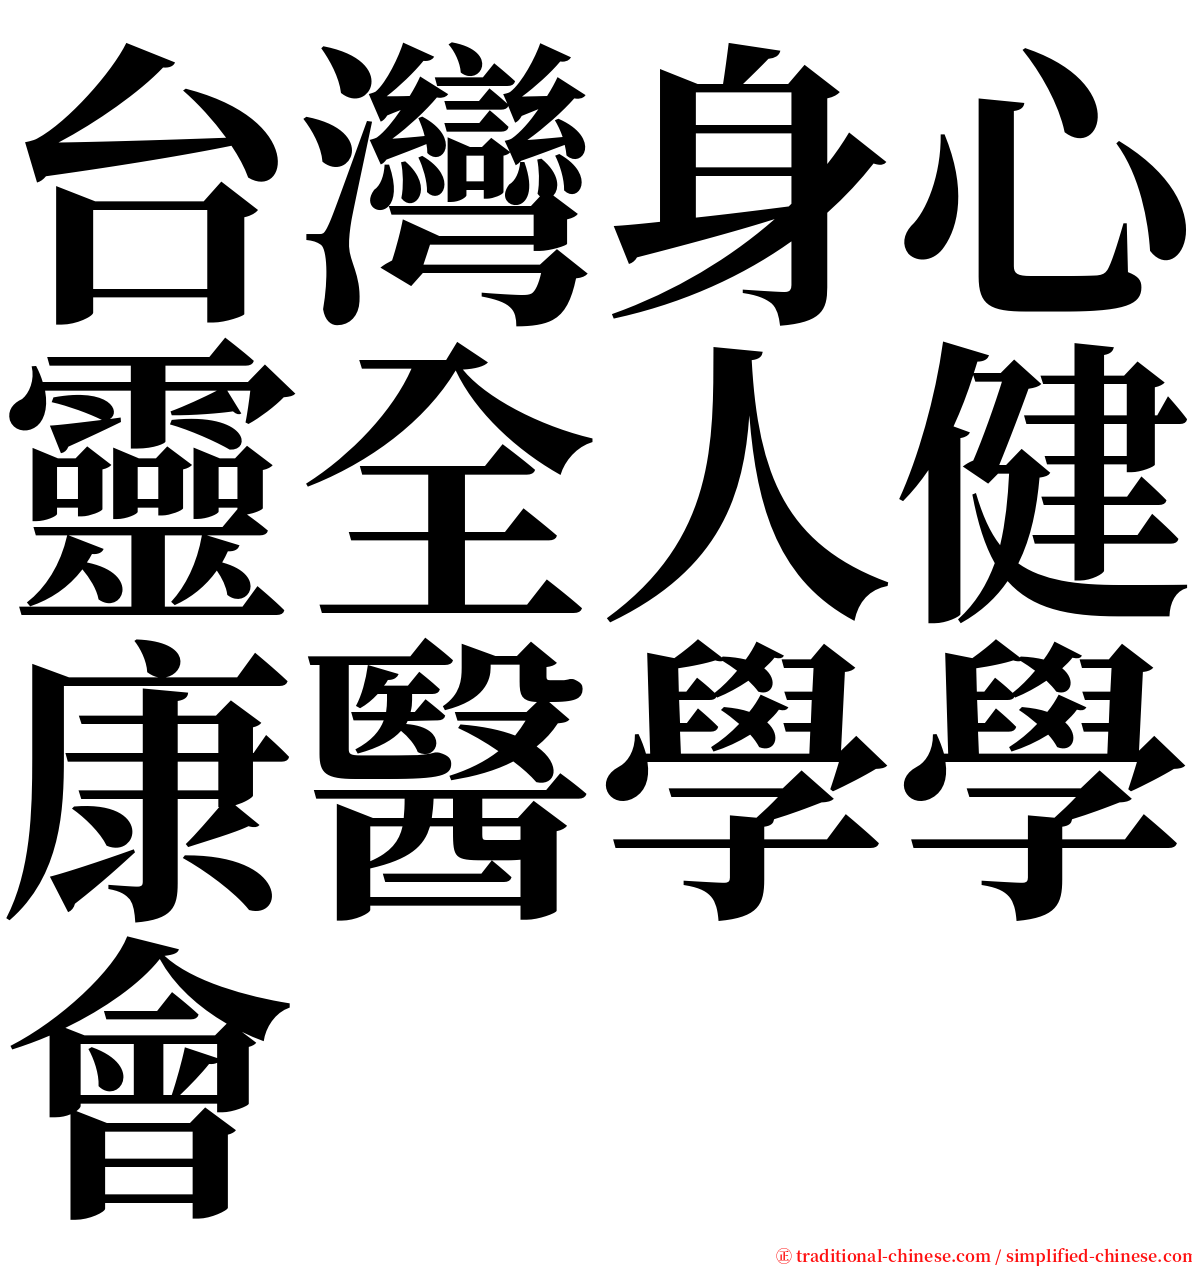 台灣身心靈全人健康醫學學會 serif font